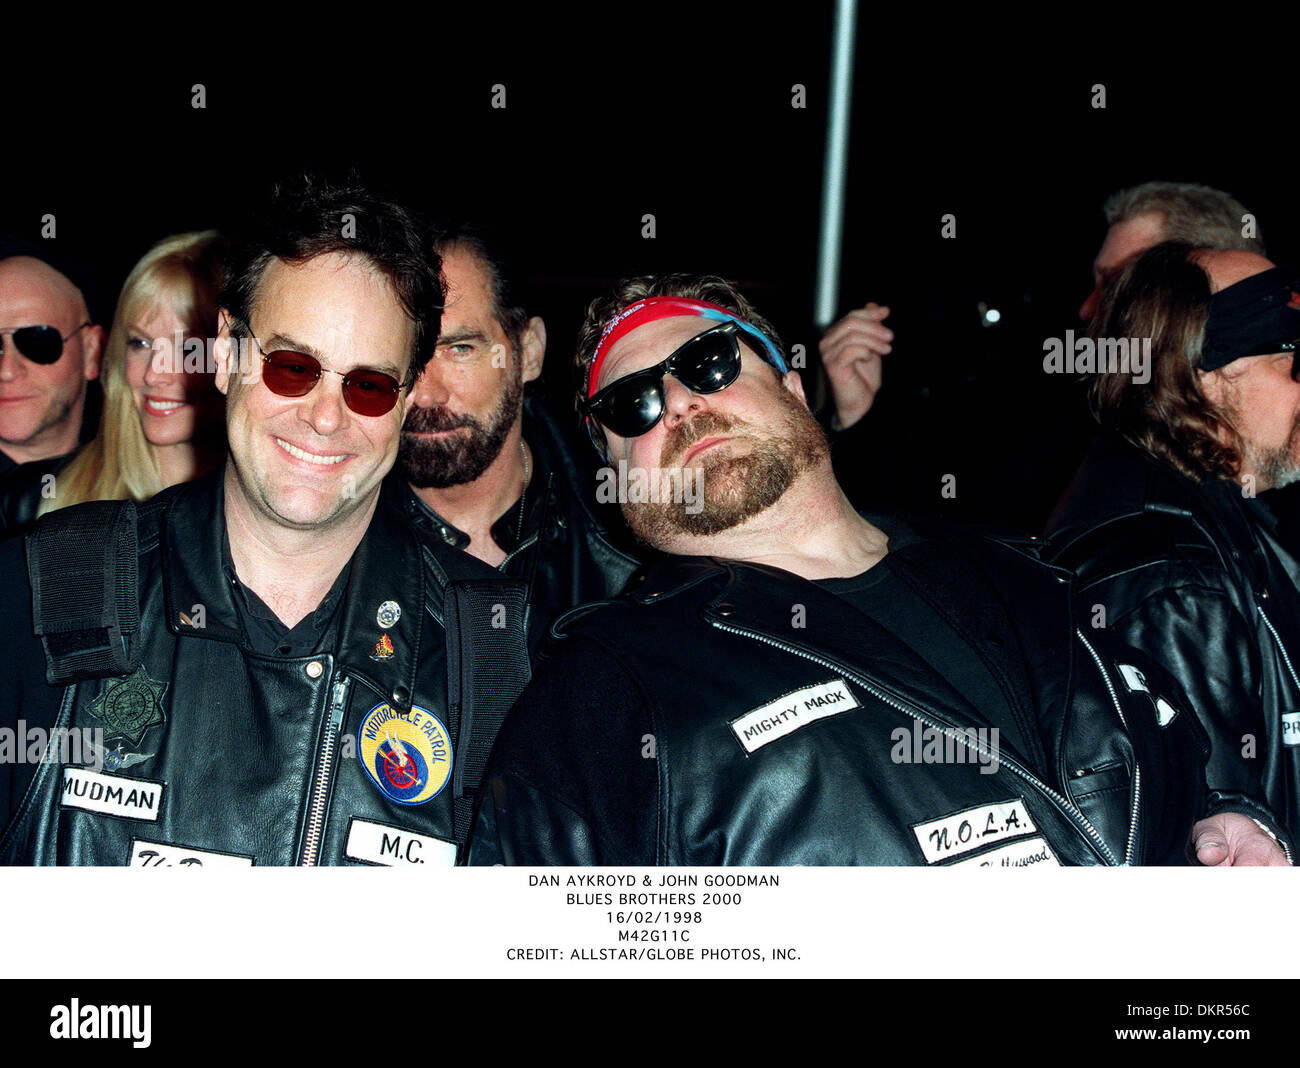 DAN AYKROYD & JOHN GOODMAN.BLUES BROTHERS 2000.16/02/1998.M42G11C. Stock Photo